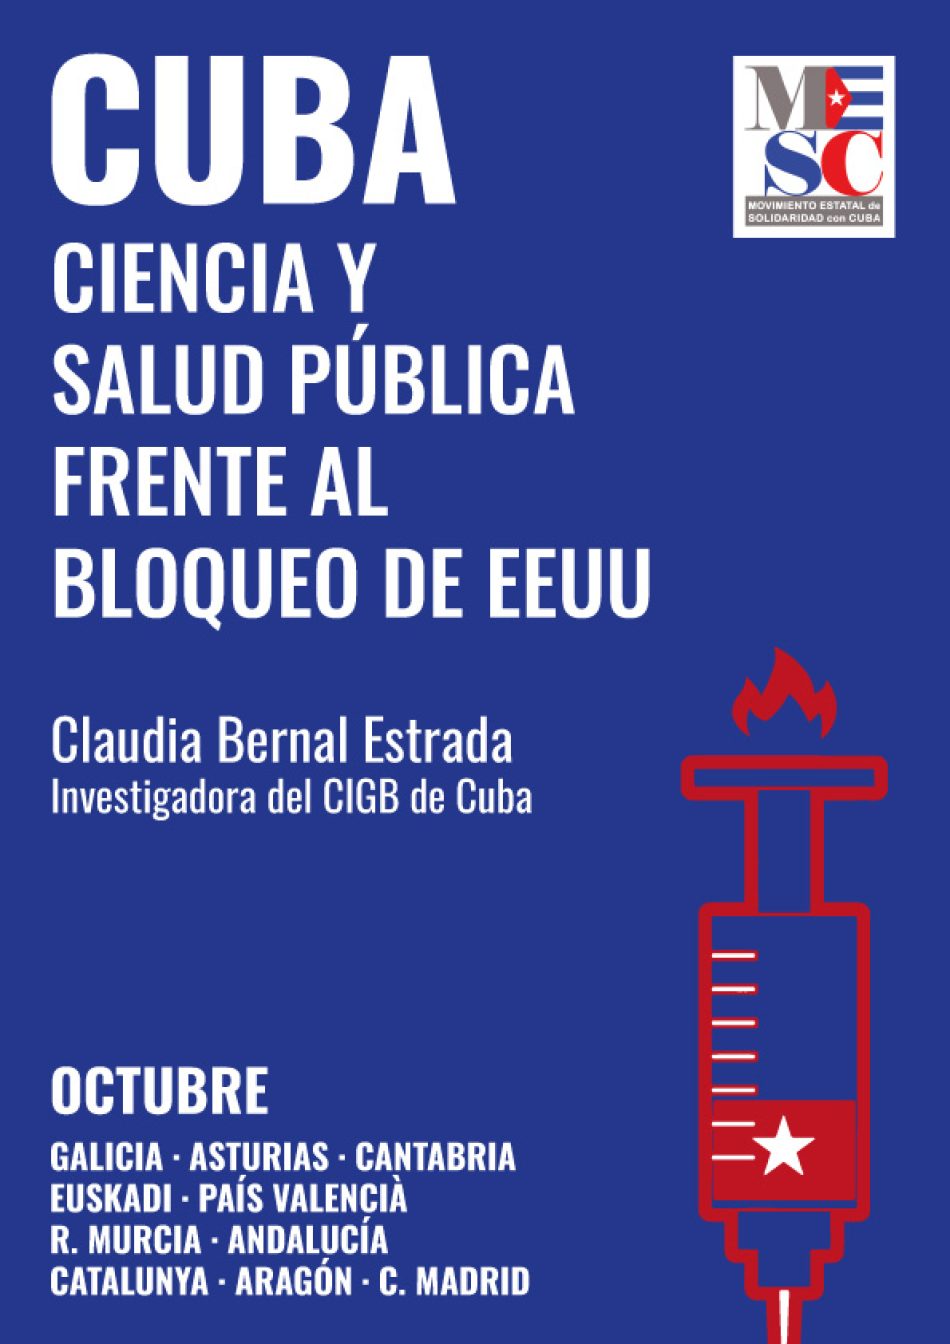 Comienza en Galicia este viernes gira de Claudia Bernal, joven investigadora cubana del centro que creó la vacuna Abdala, bajo el lema «Cuba, ciencia y salud pública frente al bloqueo de EEUU»